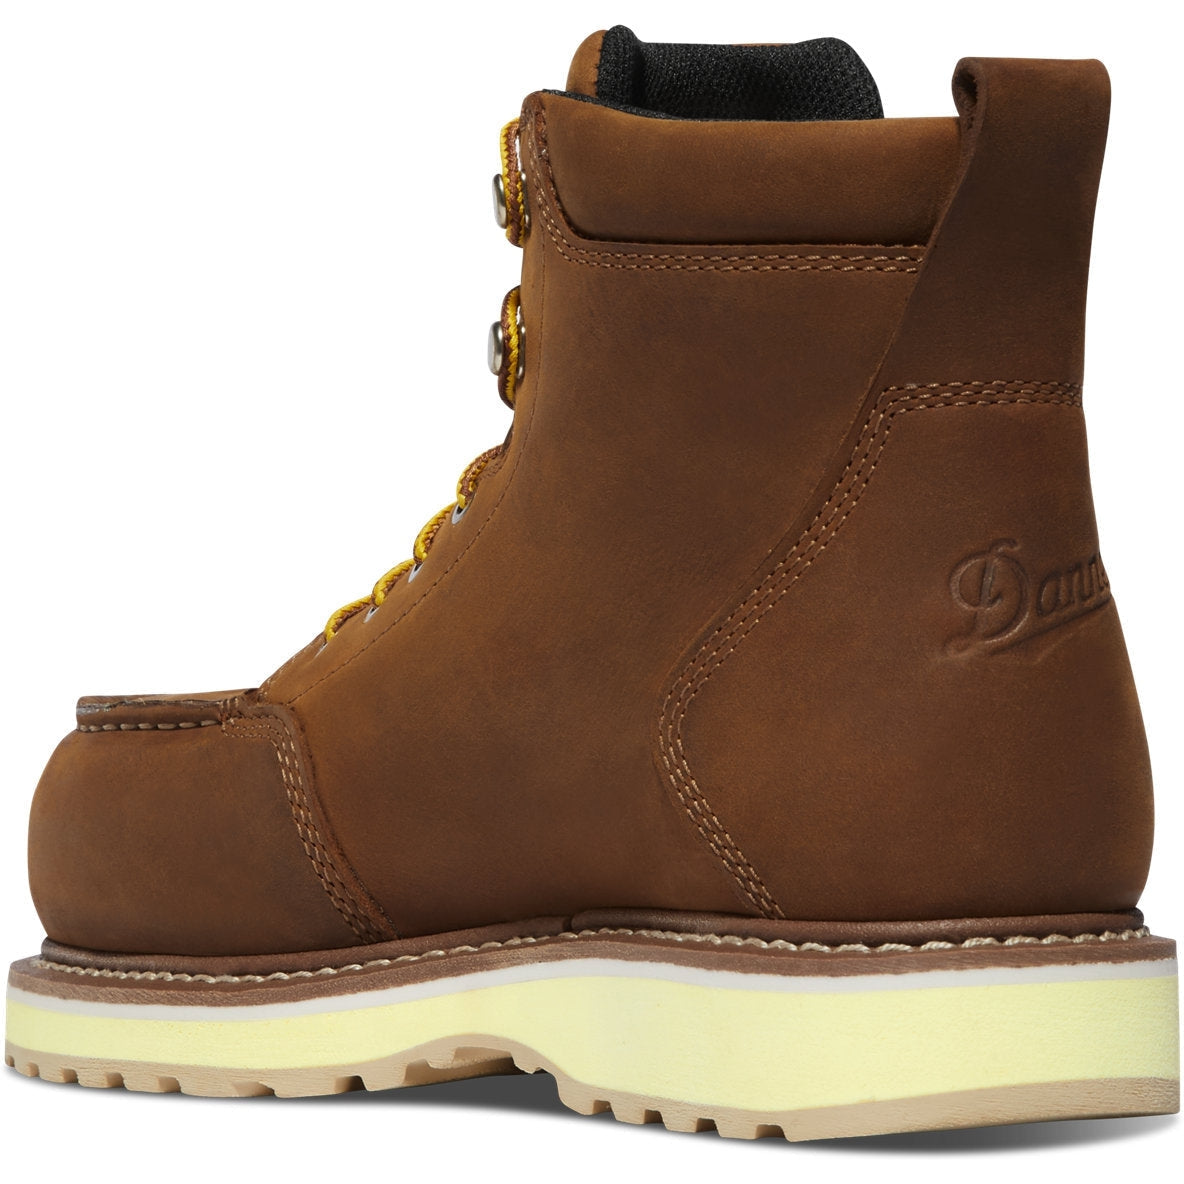 Danner Women's Cedar River 6" Plain Toe WP Work Boot -Brown- 14307  - Overlook Boots